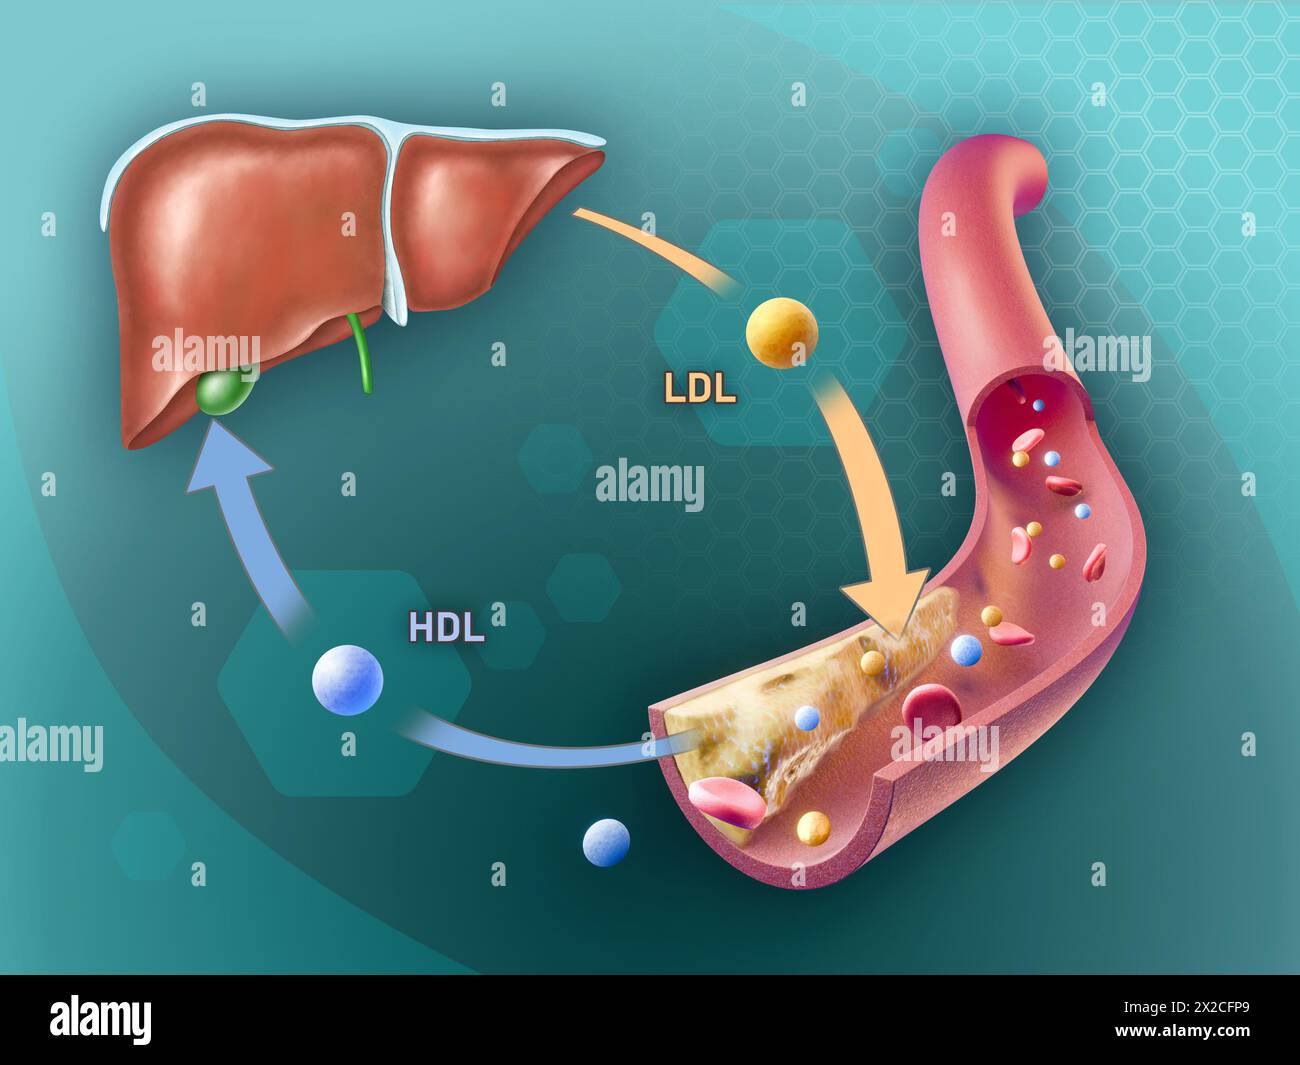 Lipoprotéines de haute densité et de basse densité ajoutant et éliminant le cholestérol d'une plaque artérielle. Illustration numérique, rendu 3D. Banque D'Images